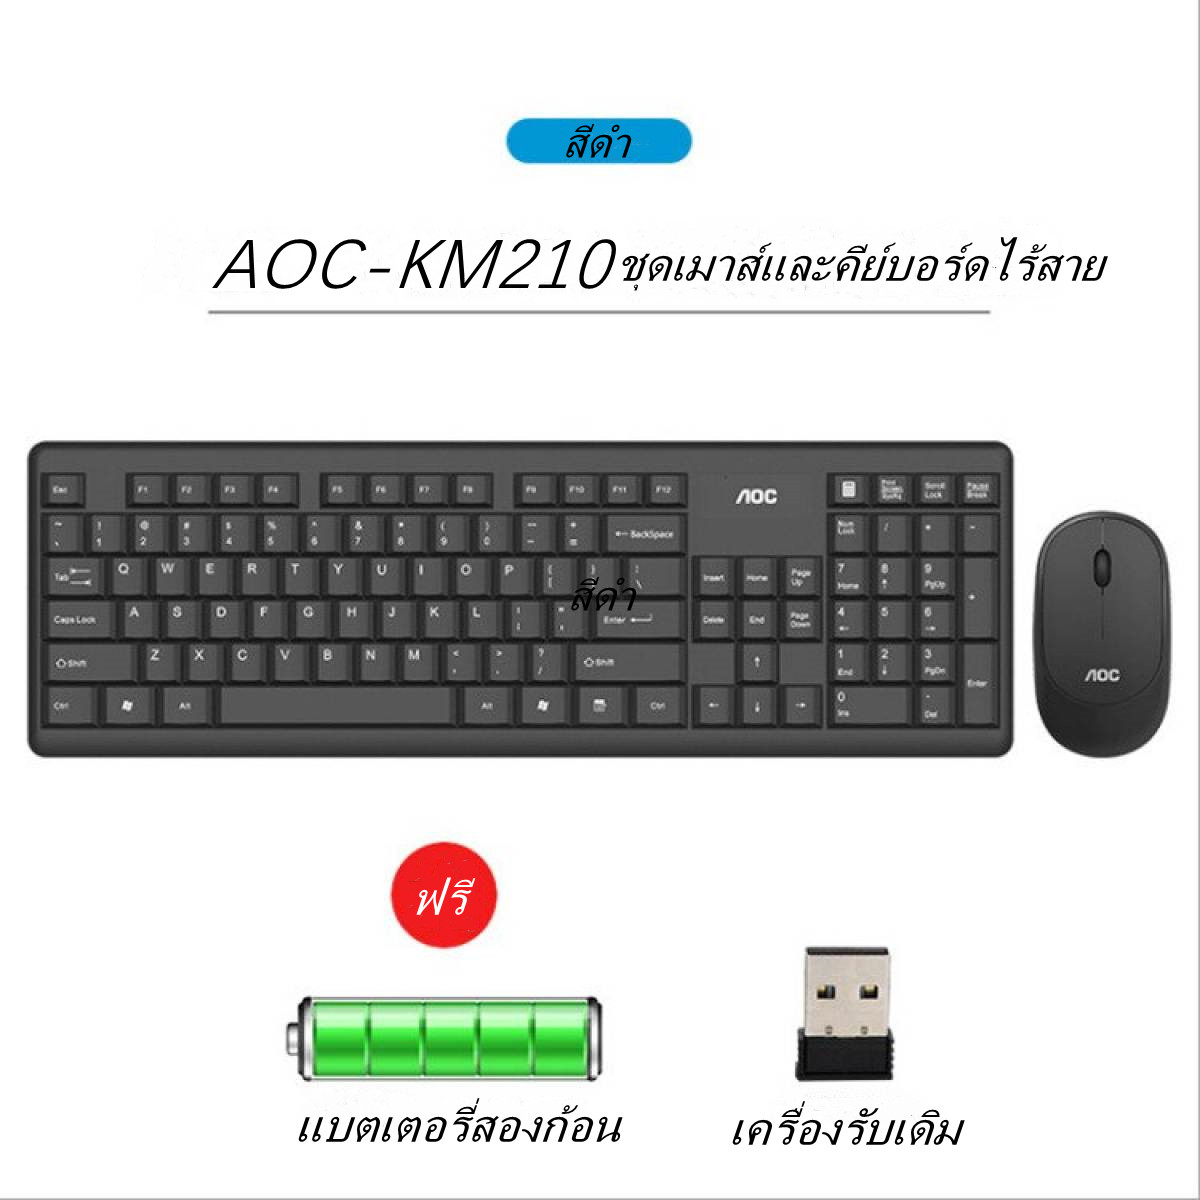 (แป้นพิมพ์ภาษาไทย / เมาส์ไร้สาย) ชุดคีย์บอร์ดและเมาส์ ไร้สาย 2.4G Wireless Combo Keyboard + Mouse เมาส์ 1600DPL แป้นพิมพ์ 103 ปุ่ม กันน้ำ รุ่นAOC KM210